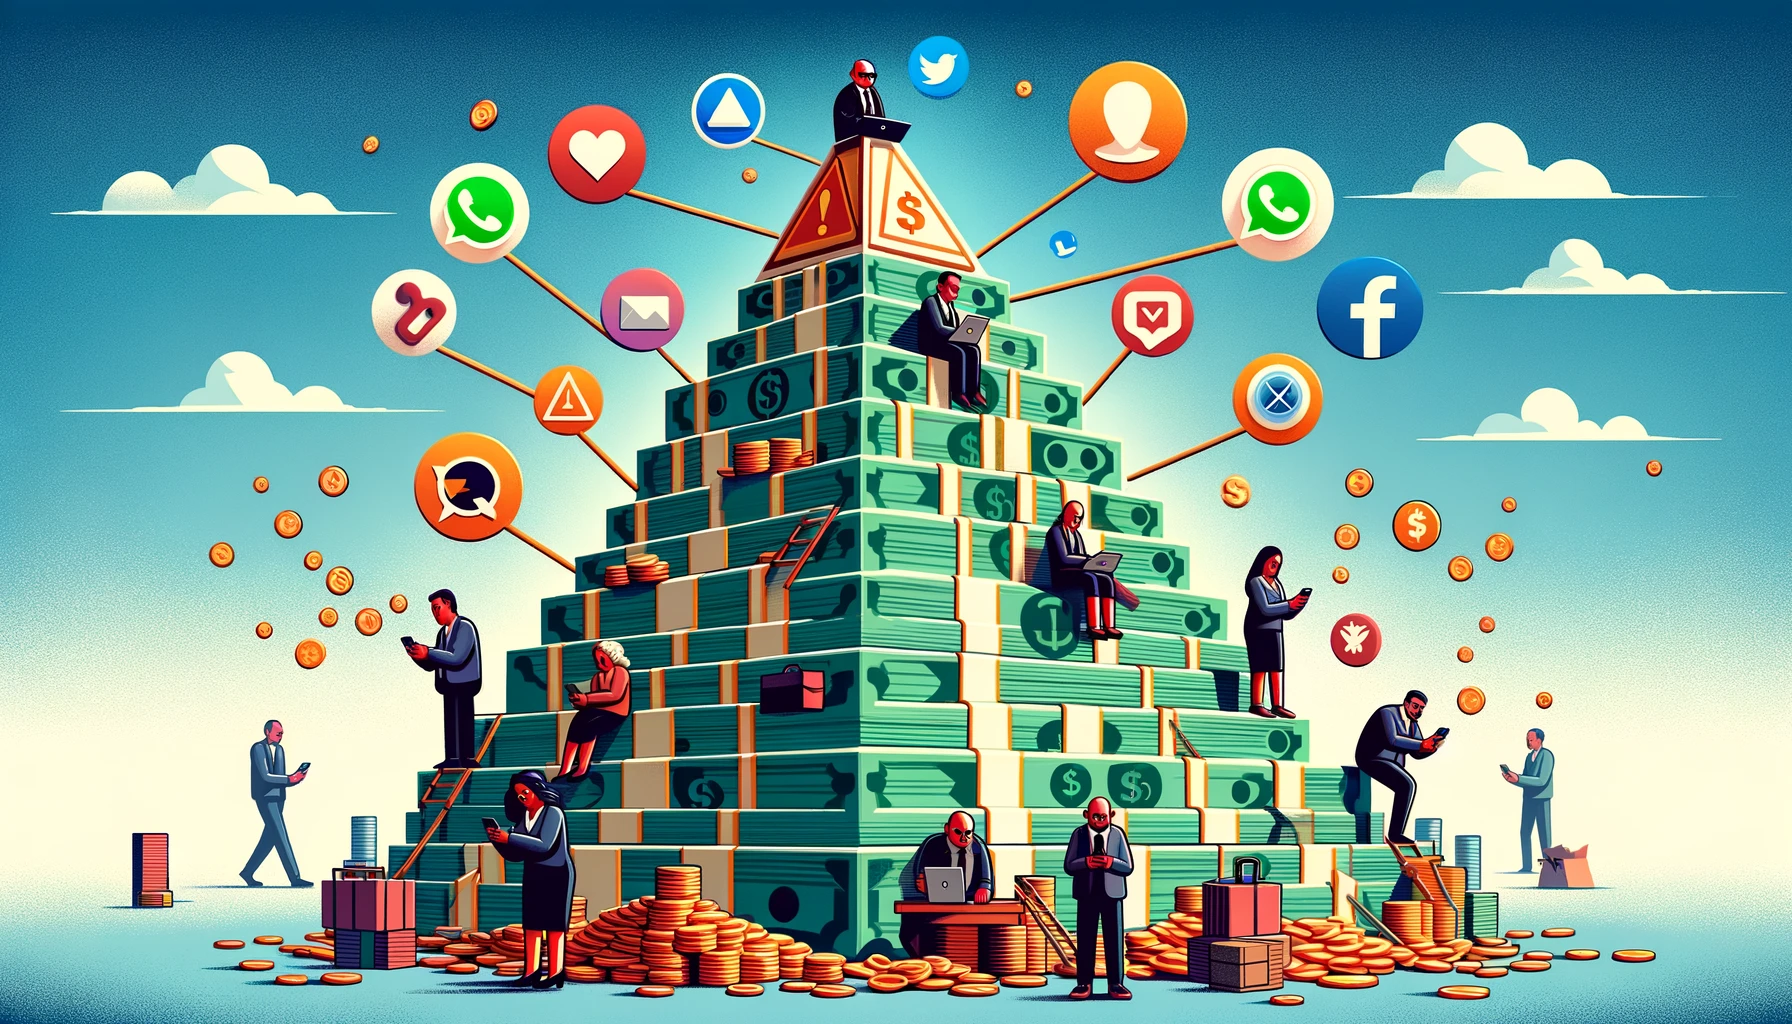 Golpes de pirâmides financeiras ressurgem nas redes sociais e preocupam investidores